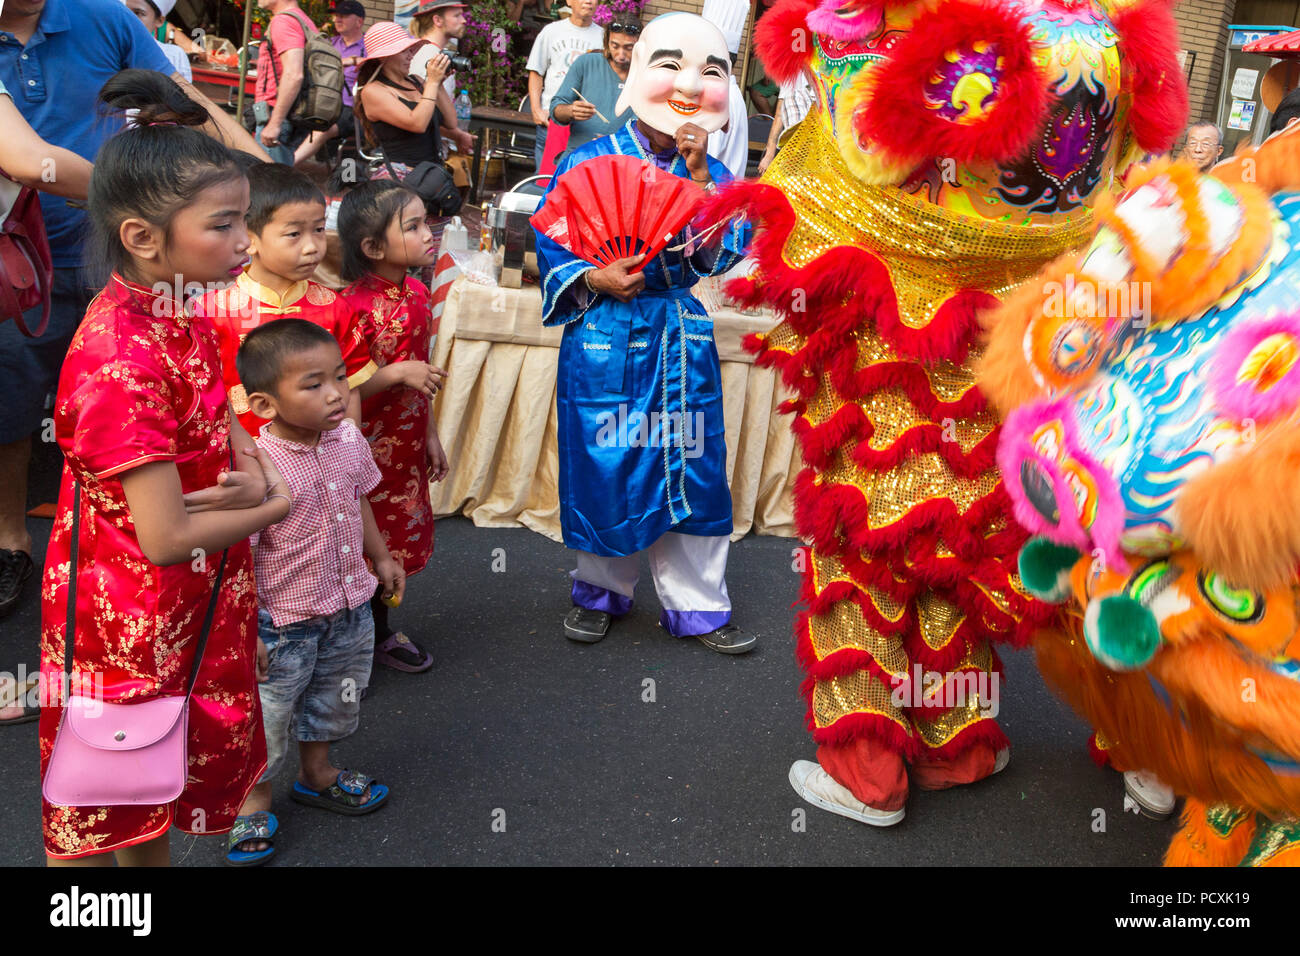 Costume Lion au Nouvel An Chinois, Chinatown, Bangkok, Thaïlande Banque D'Images